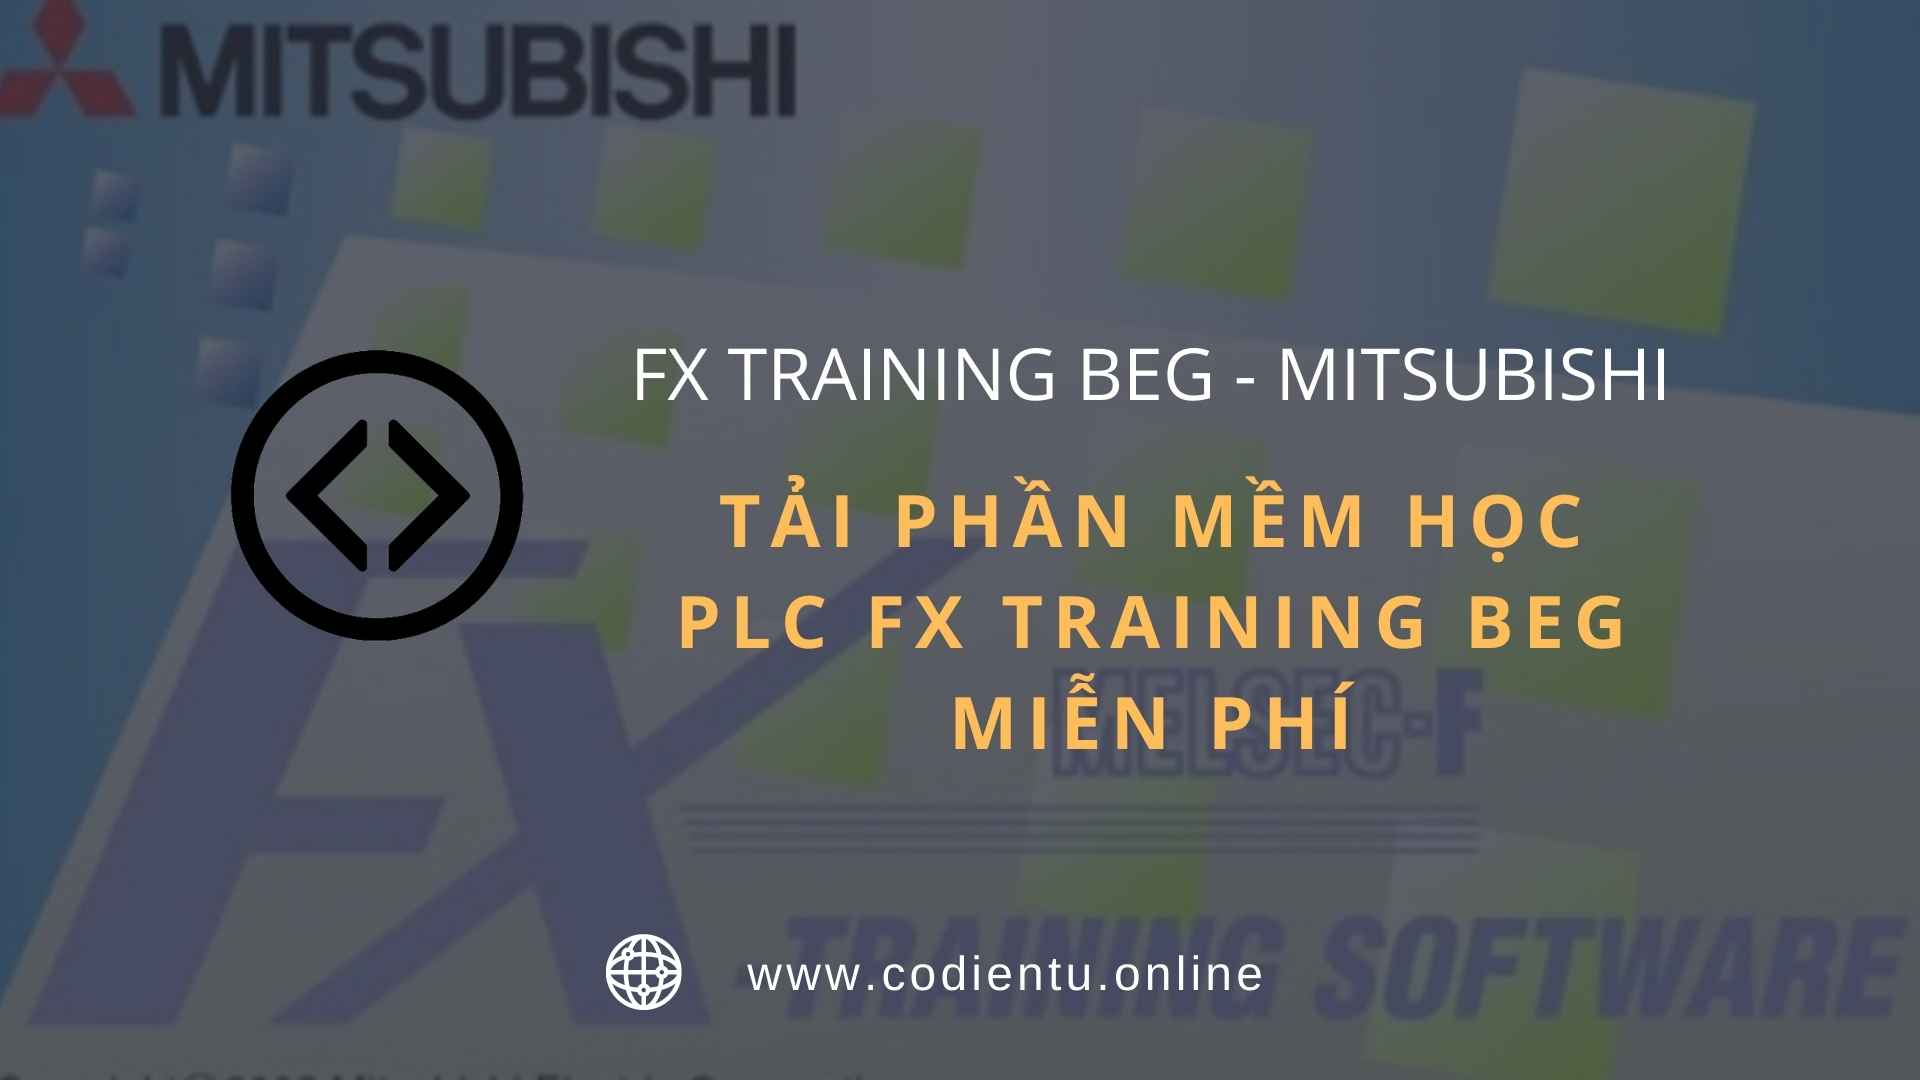 Tải phần mềm học PLC FX Training BEG miễn phí + Hướng dẫn